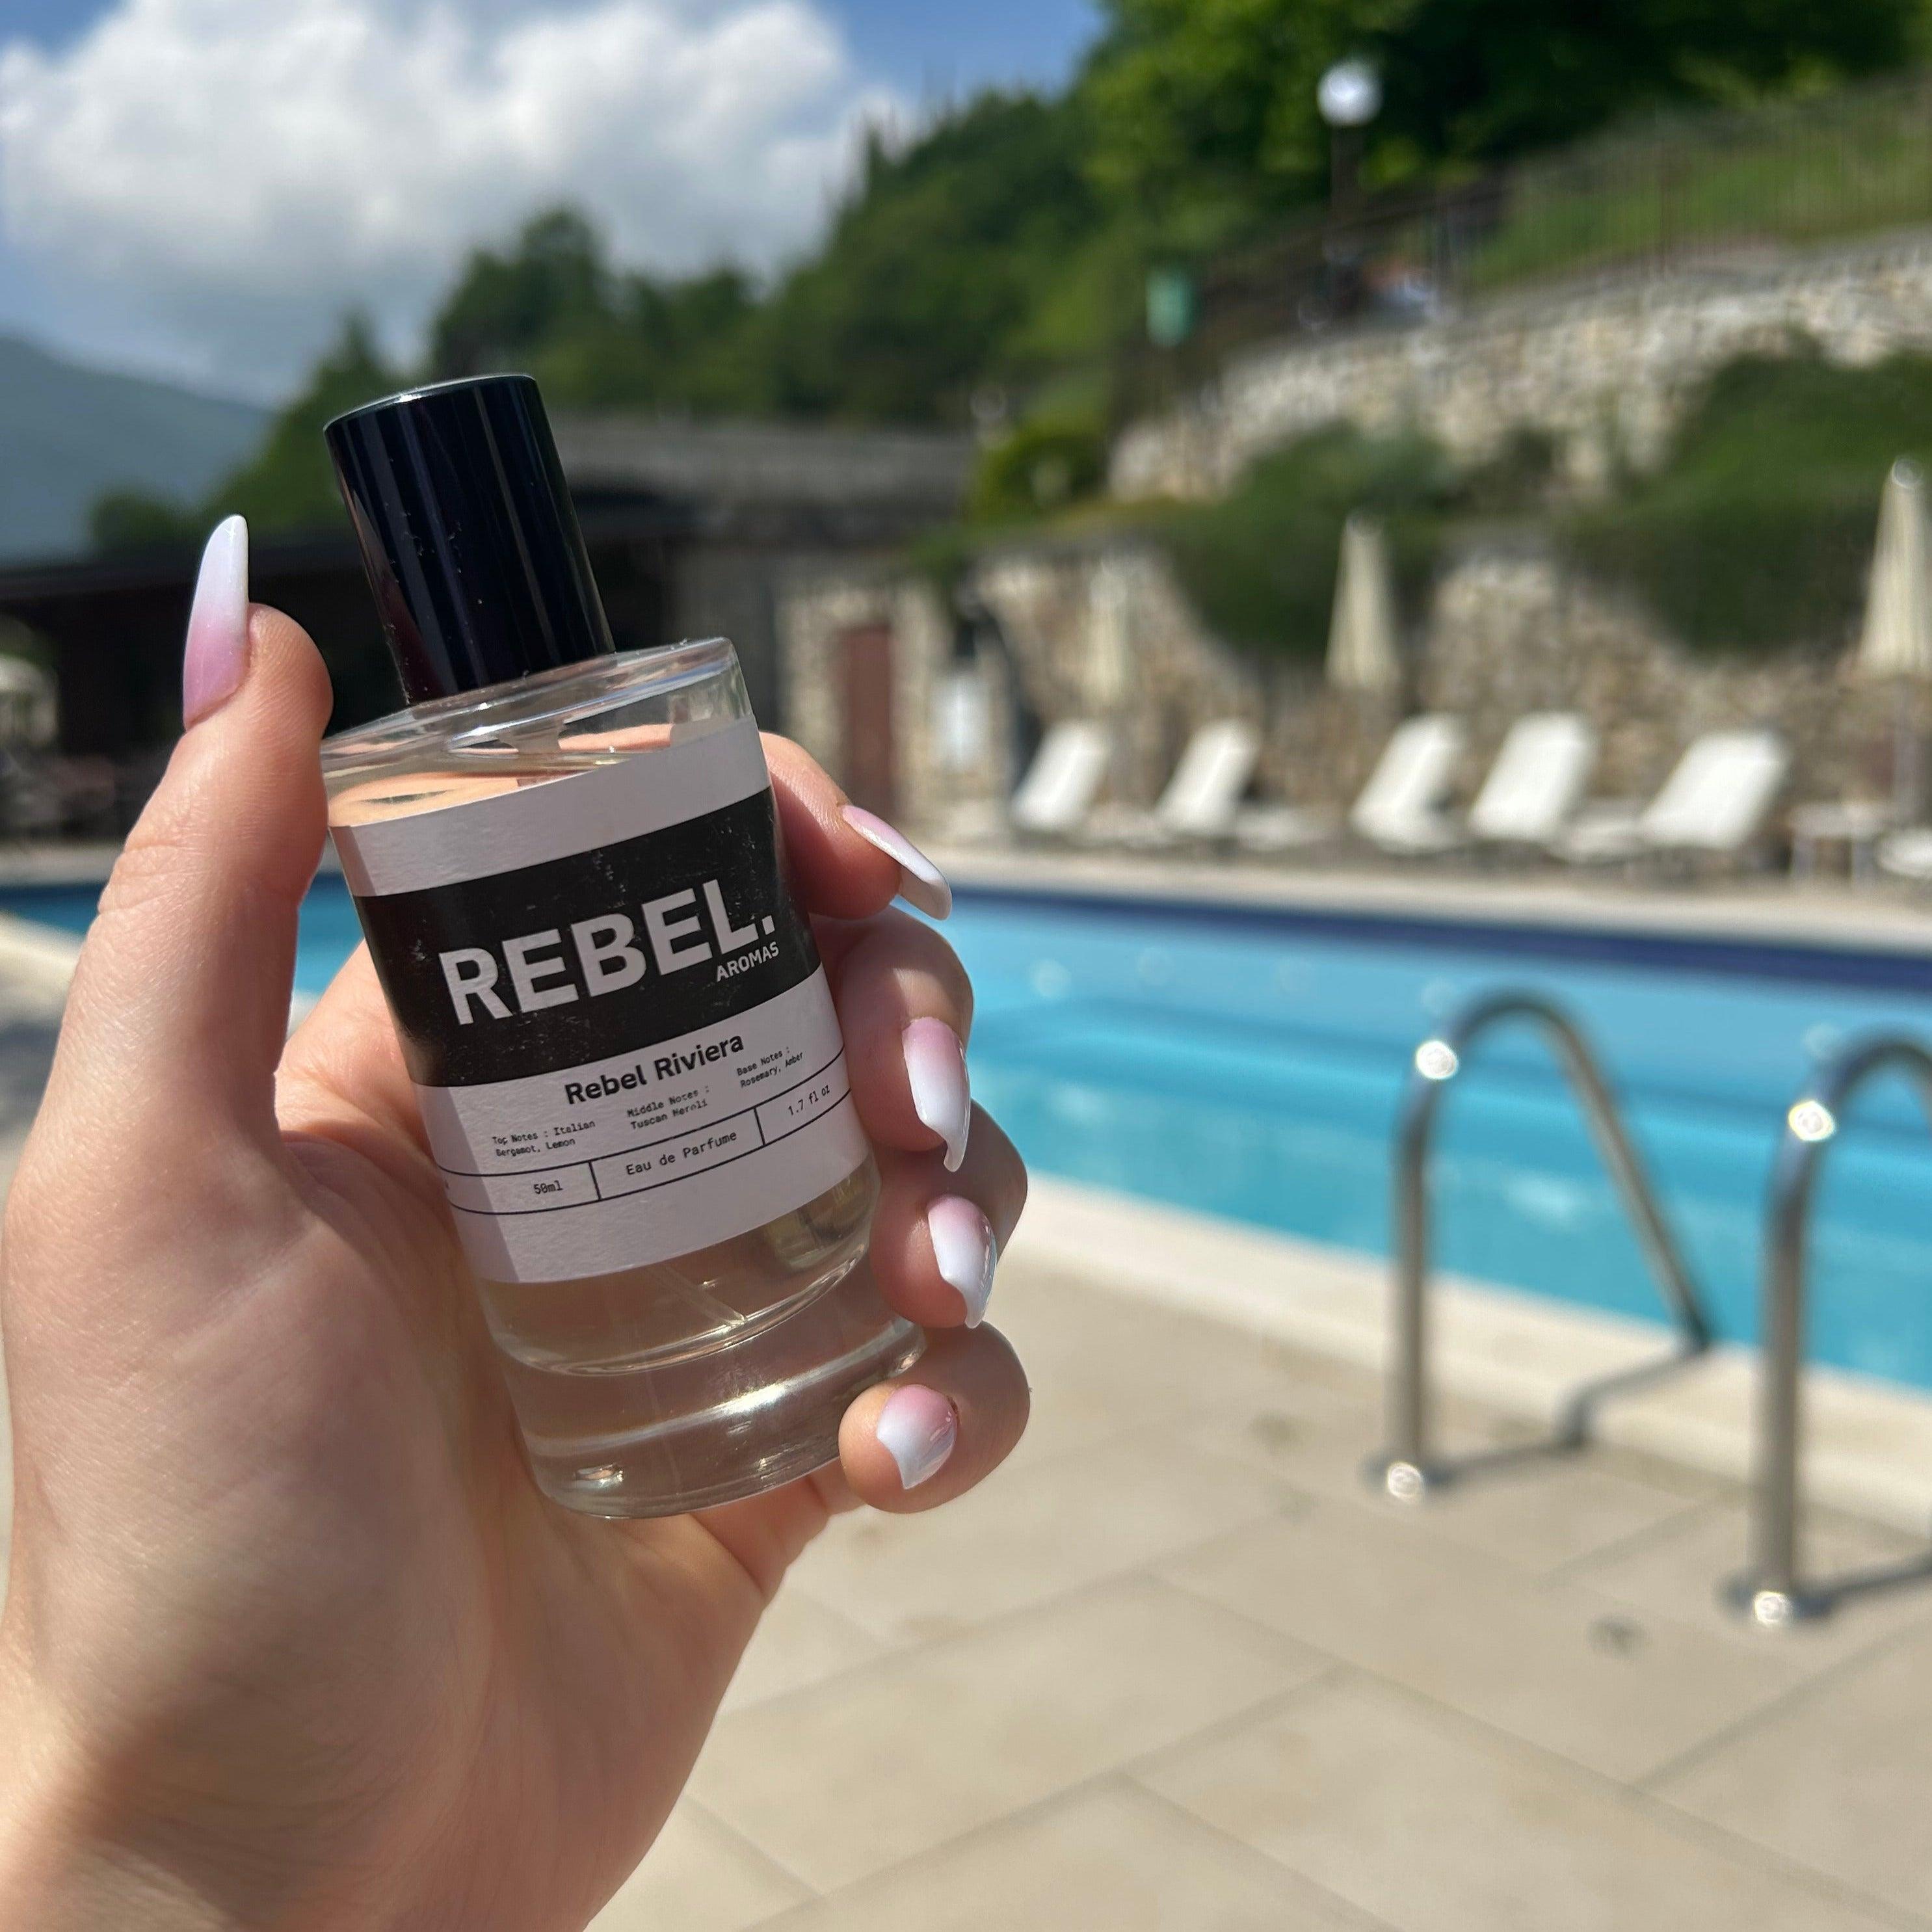 Rebel Riviera - Rebel Aromas